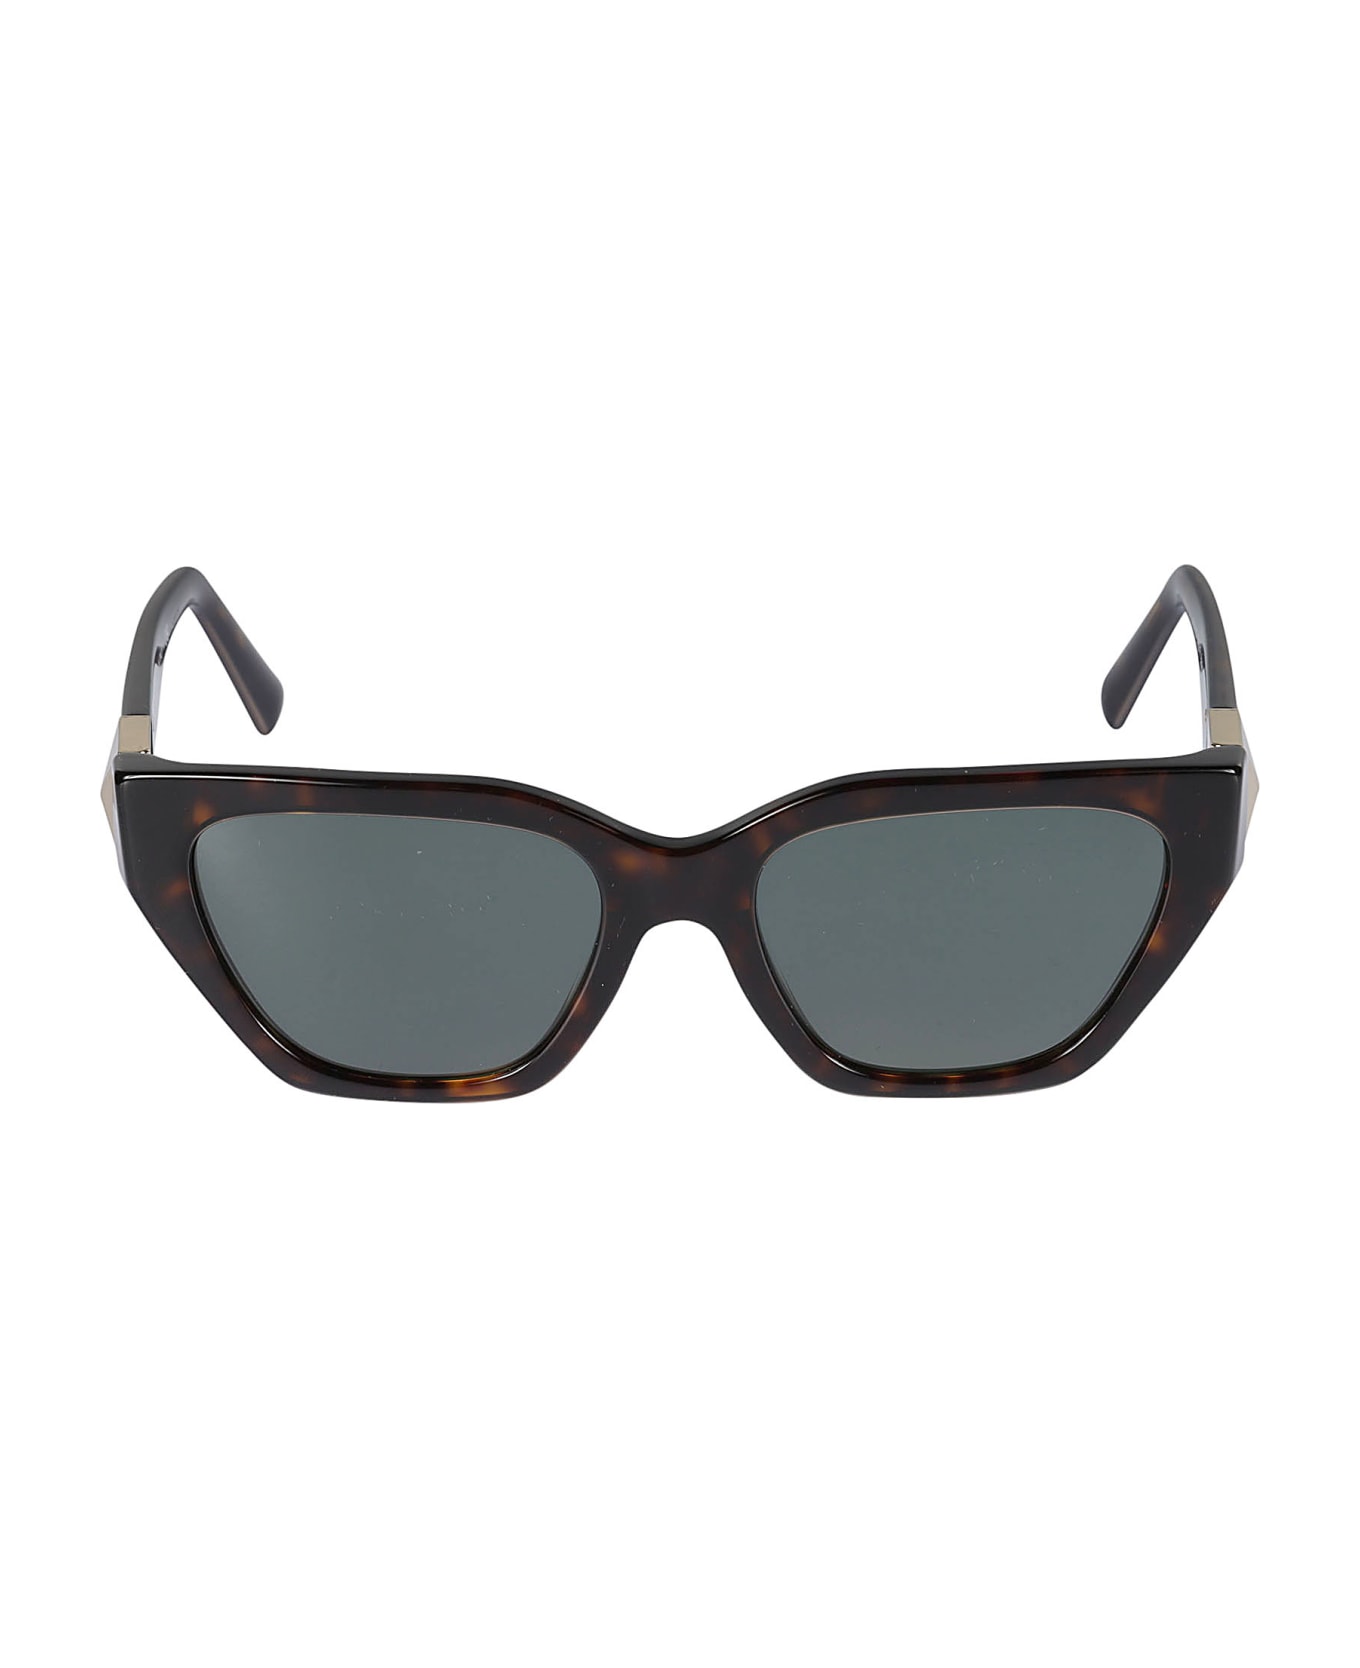 Valentino Eyewear Sole500271 Sunglasses - 500271 サングラス